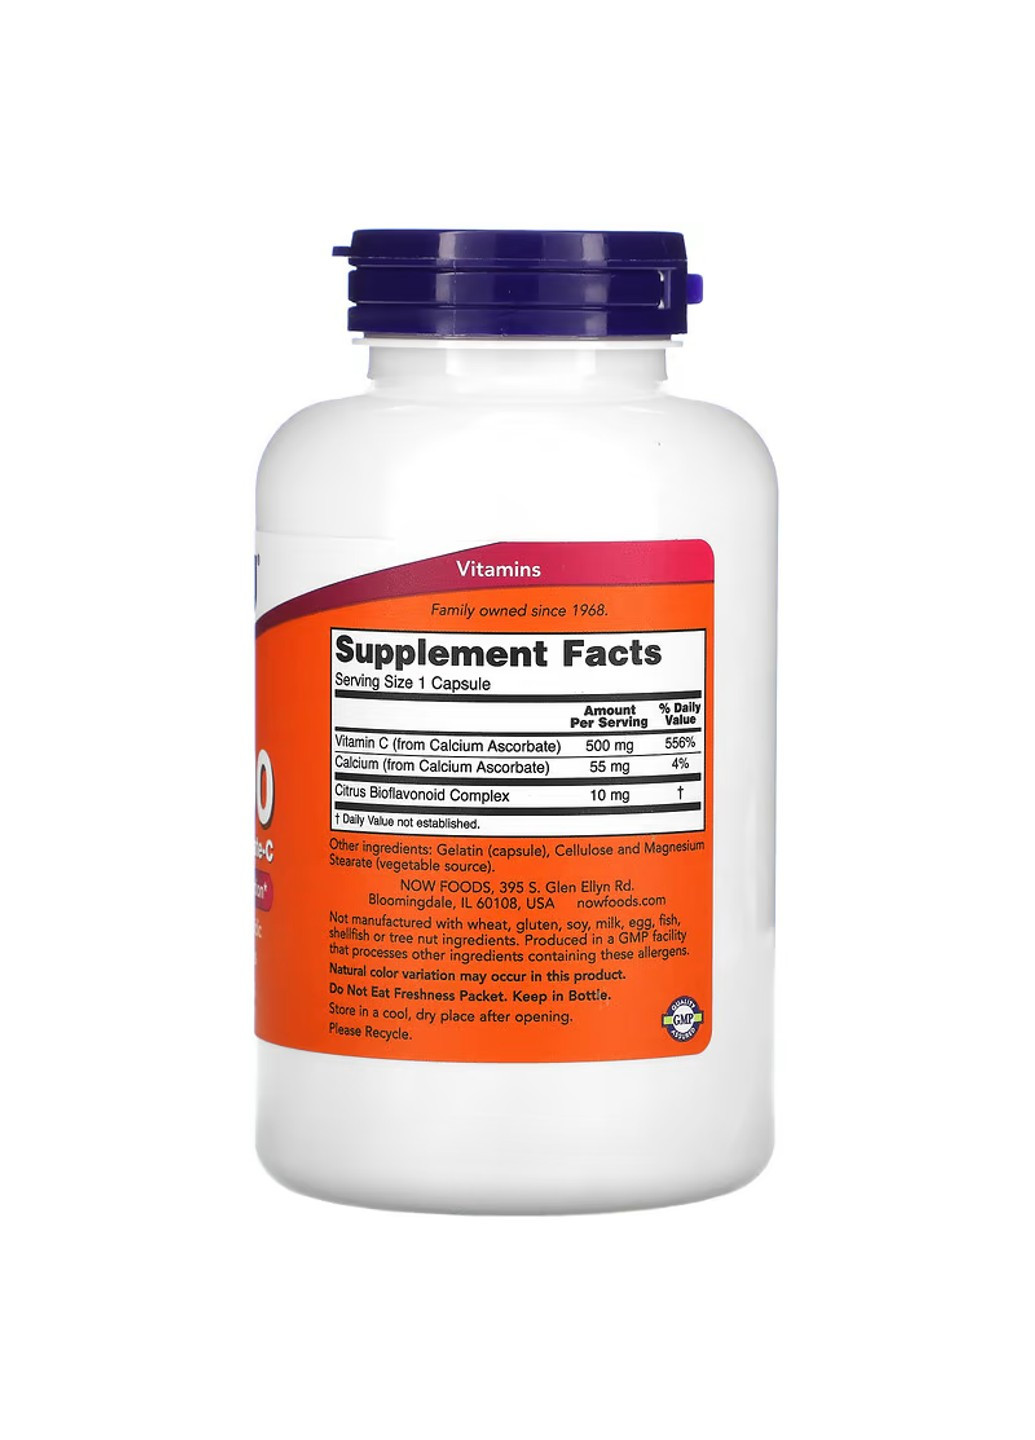 Витамин С с кальцием C-500 Ascorbate – 250 вег.капсул Now Foods (276530020)